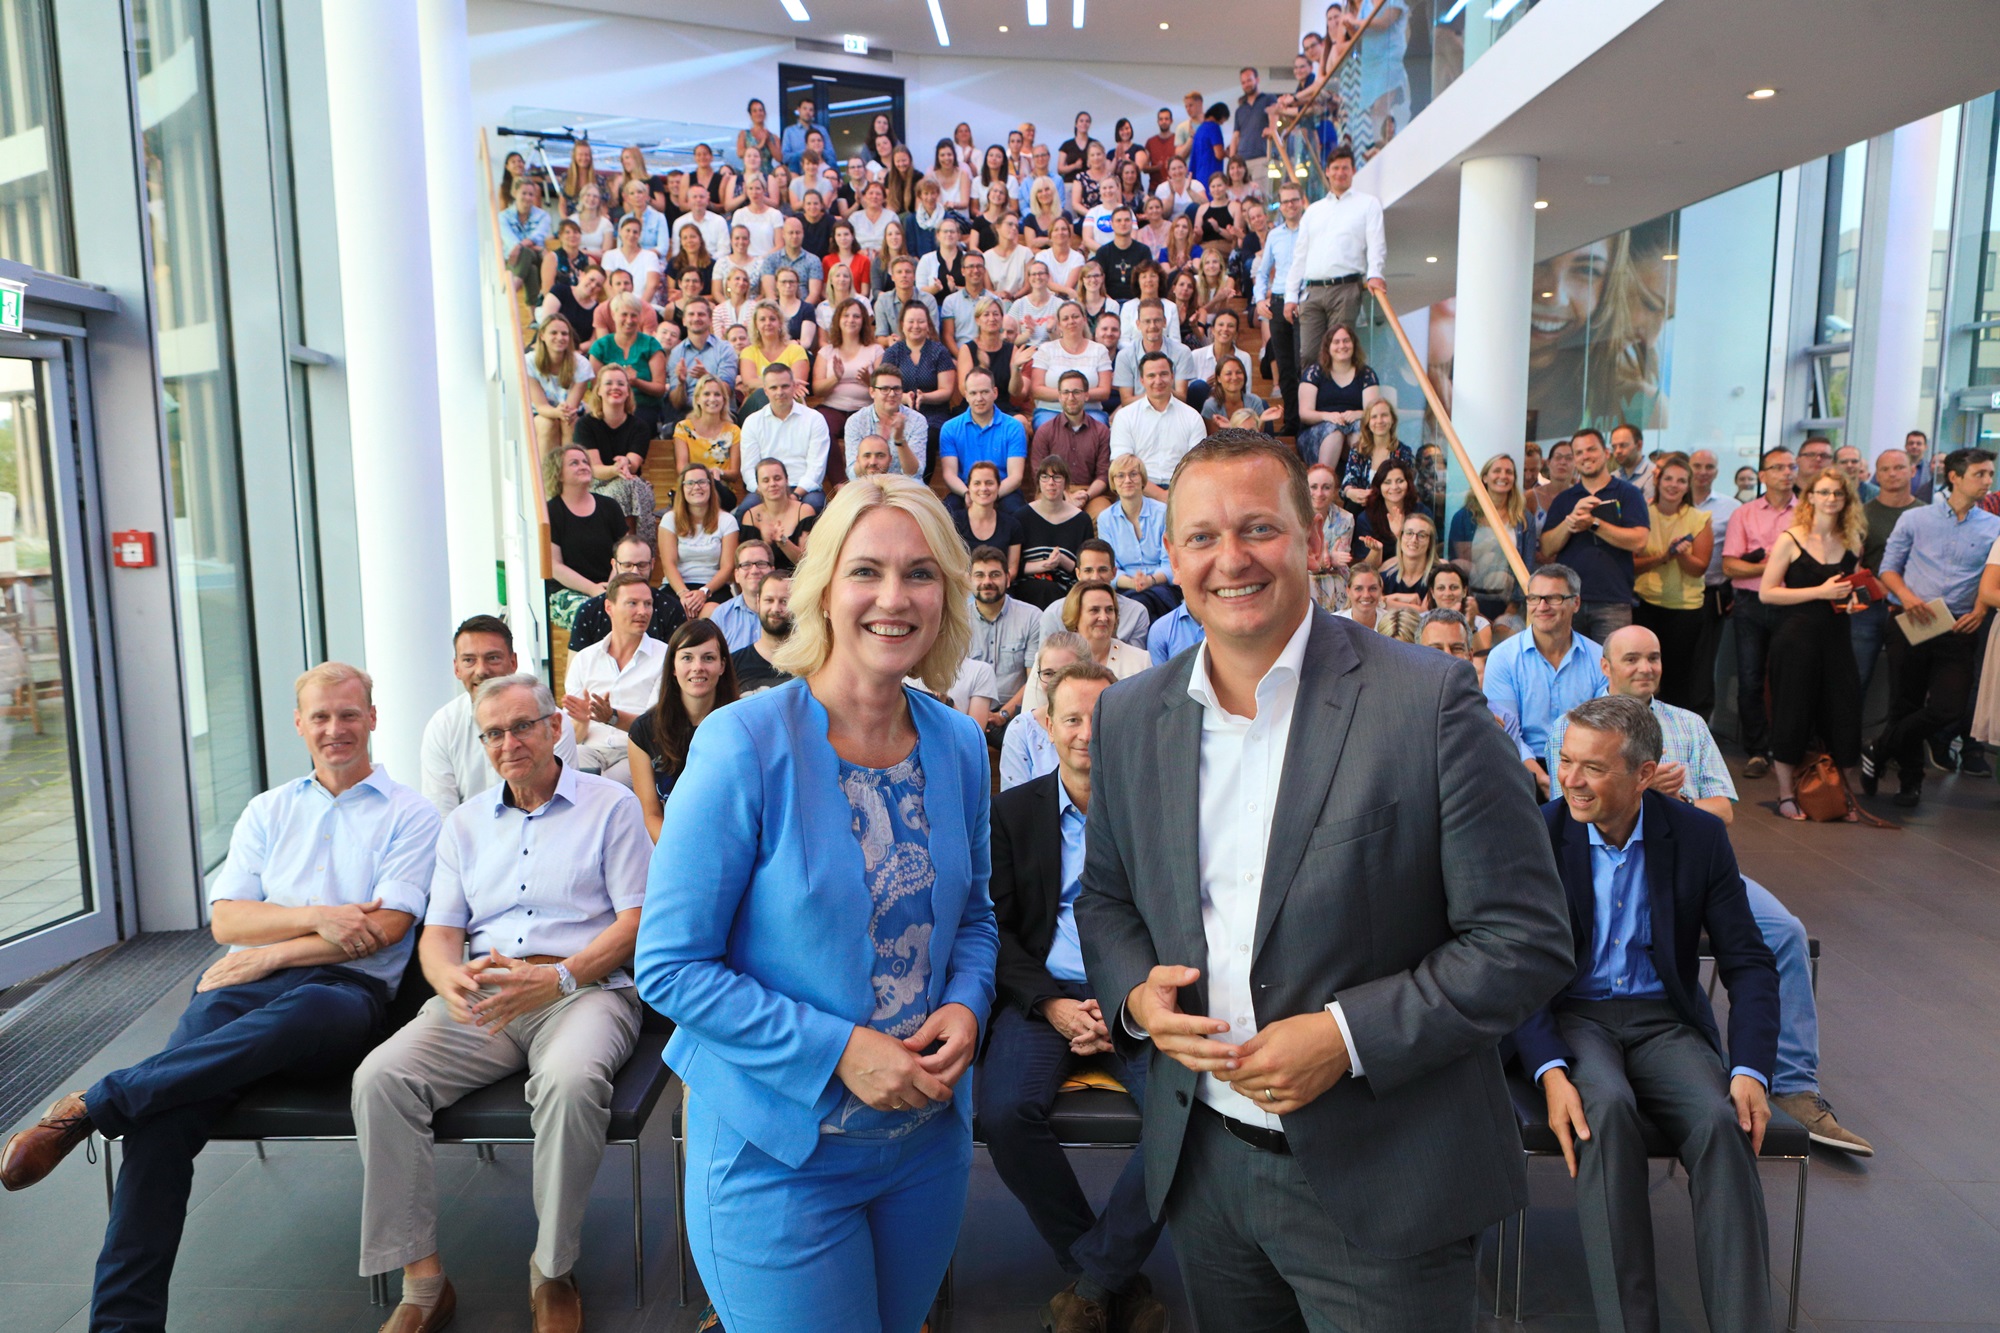 Manuela Schwesig, Ministerpräsidentin des Landes Mecklenburg-Vorpommern, besuchte die Mitarbeiter von AIDA Cruises in Rostock.